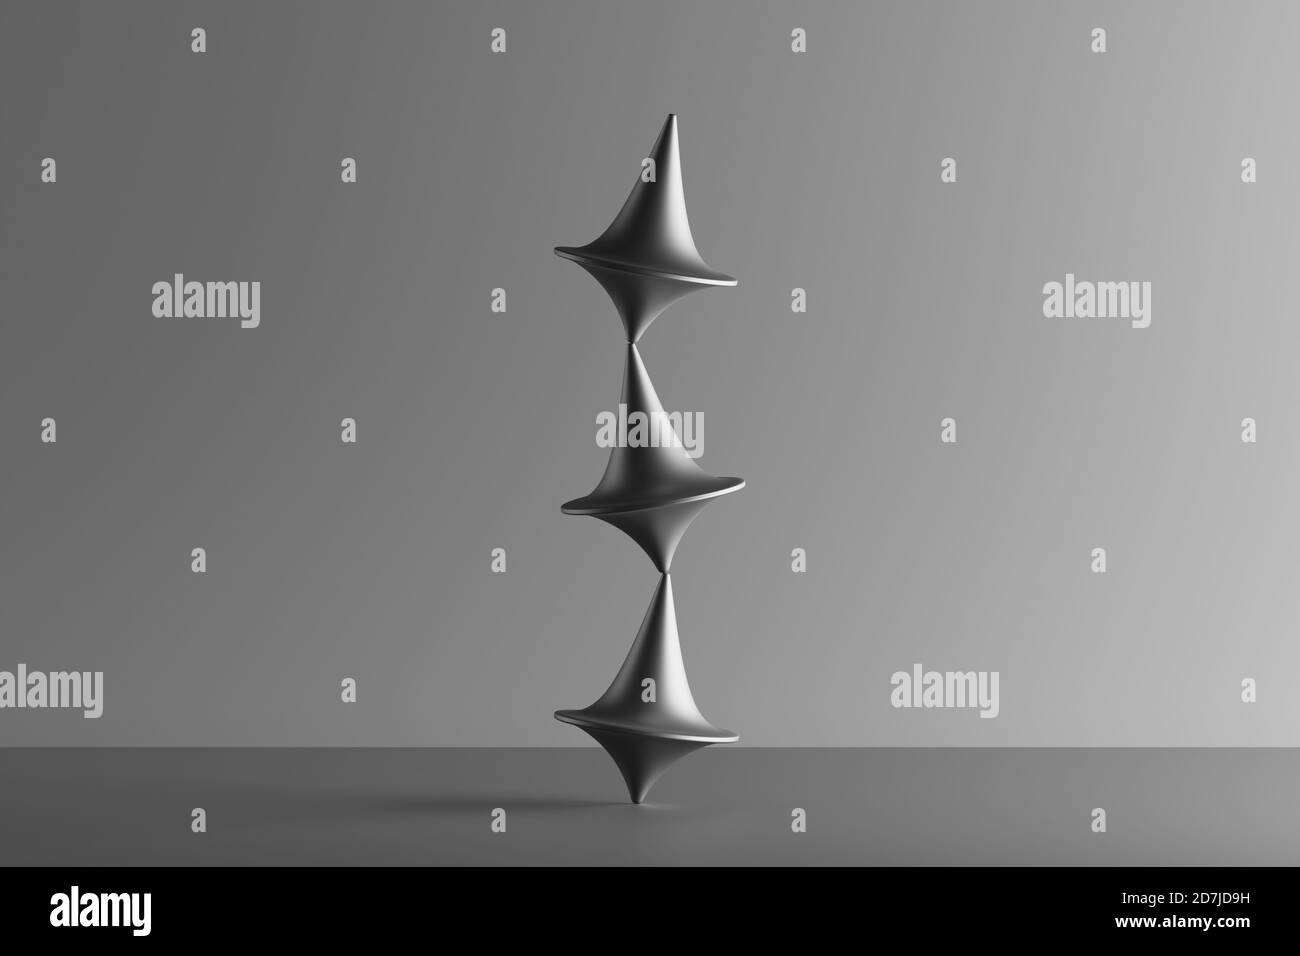 Rappresentazione tridimensionale di tre piani di filatura metallici che si bilanciano l'uno sopra l'altro Foto Stock